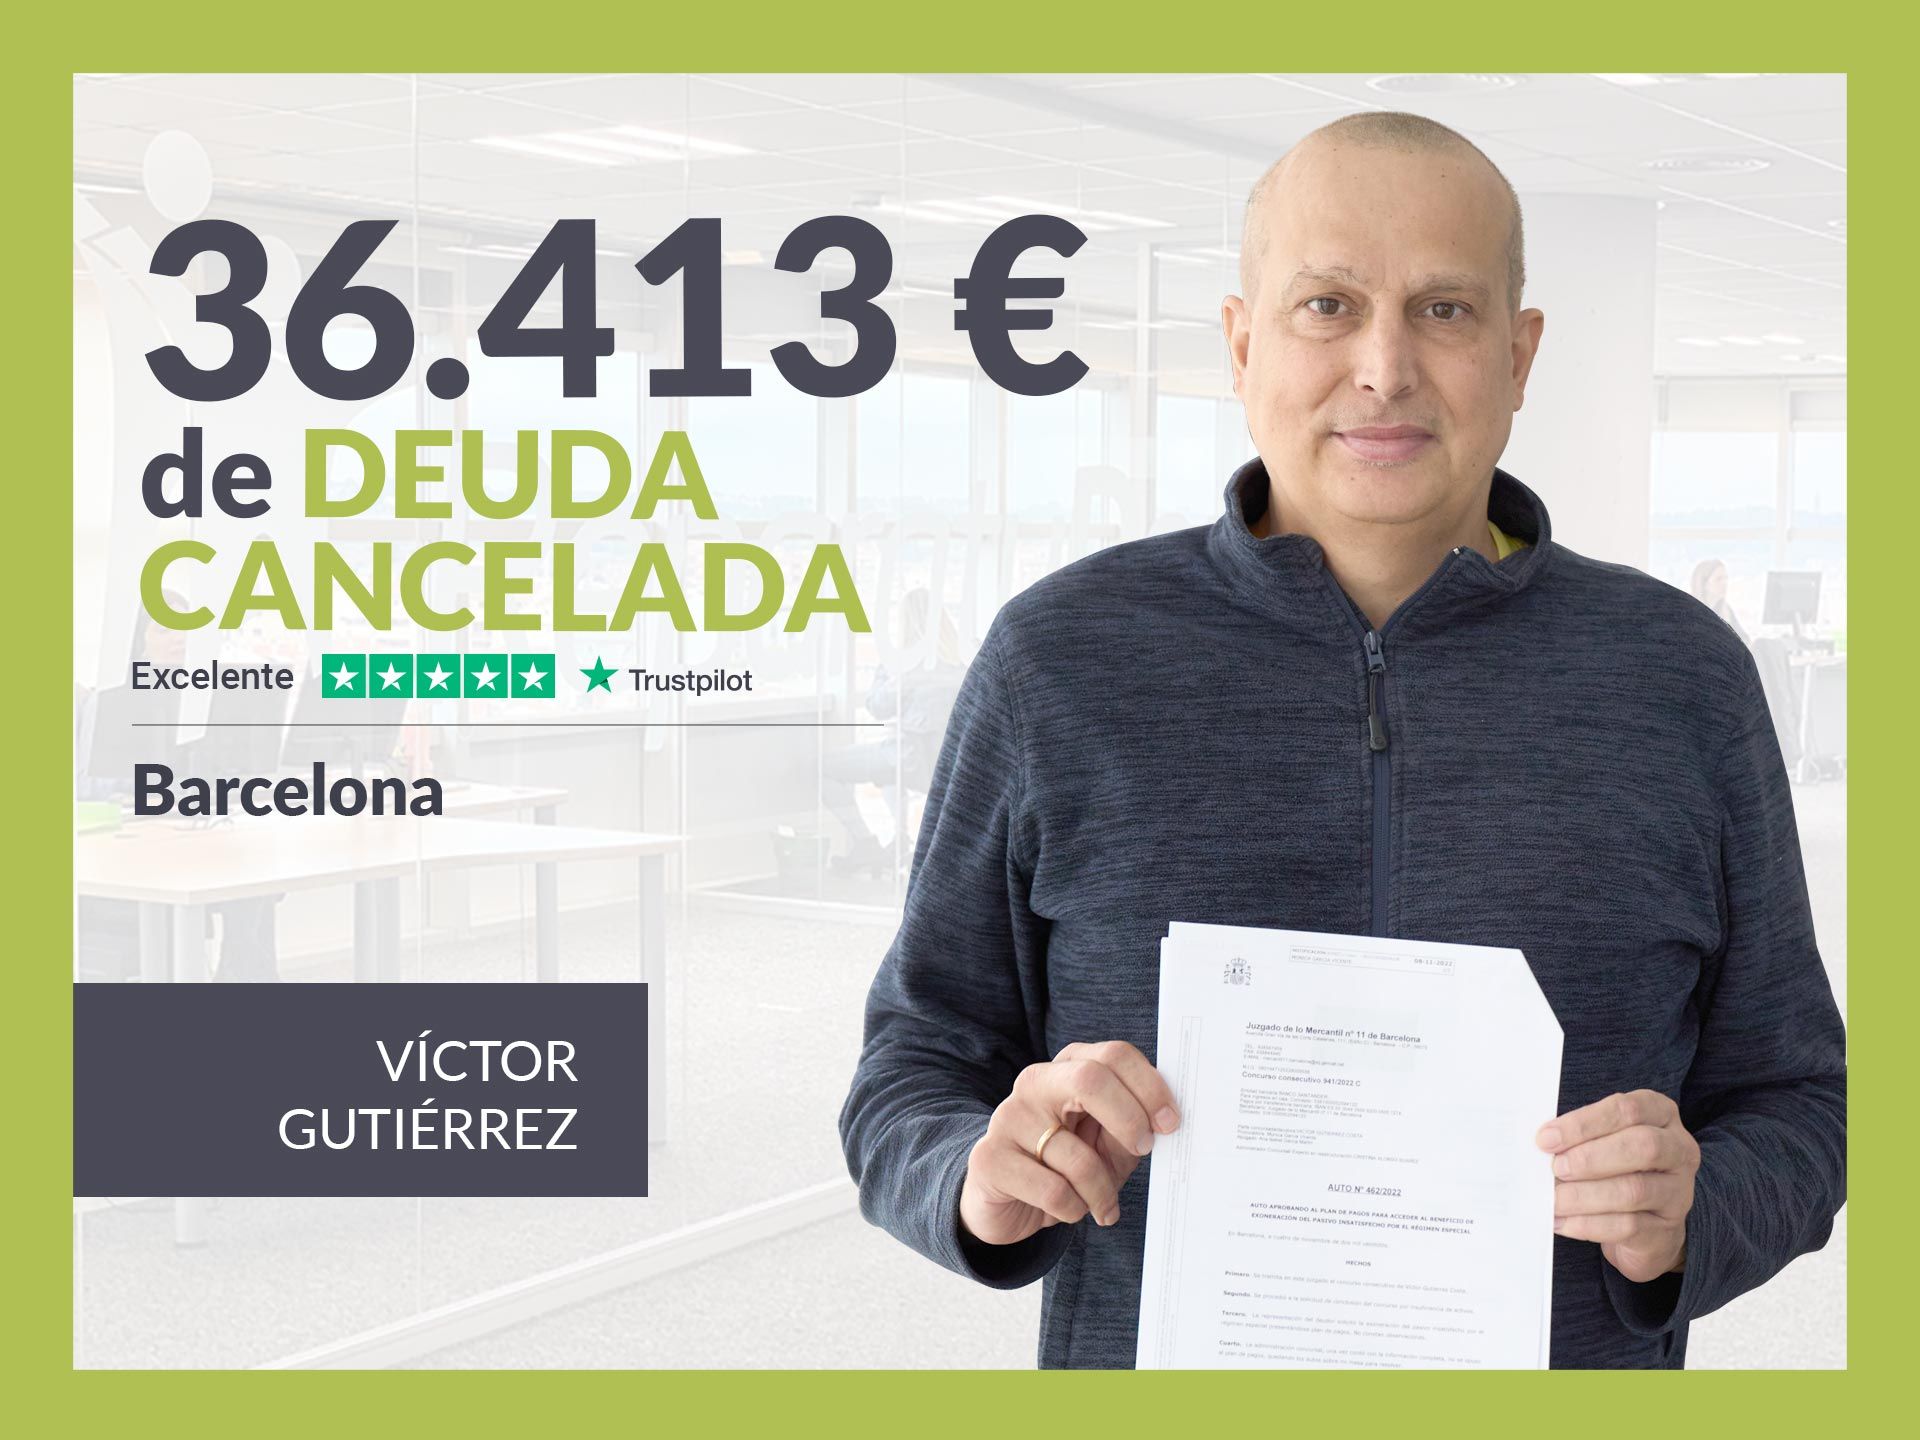 Repara tu Deuda Abogados cancela 36.413? en Barcelona (Catalunya) con la Ley de Segunda Oportunidad